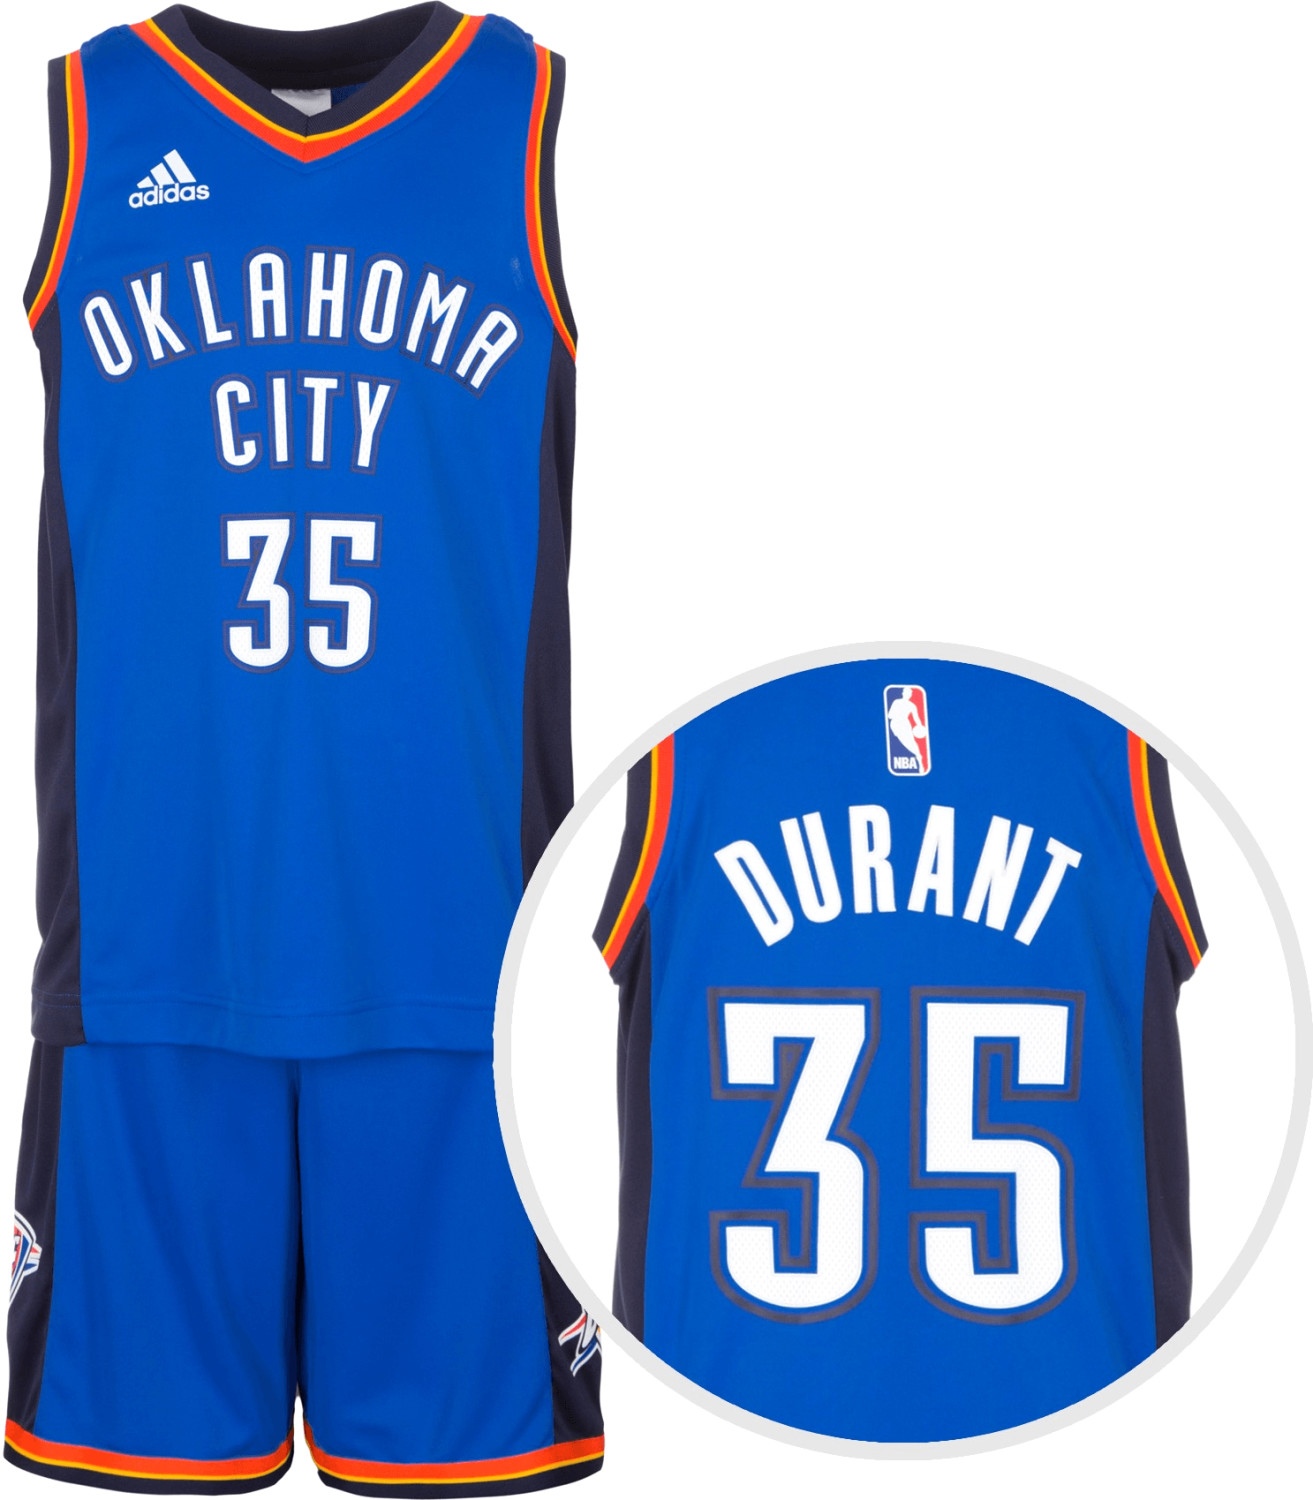 Adidas Oklahoma City Thunder Durant Mini Kit 2015/16 away